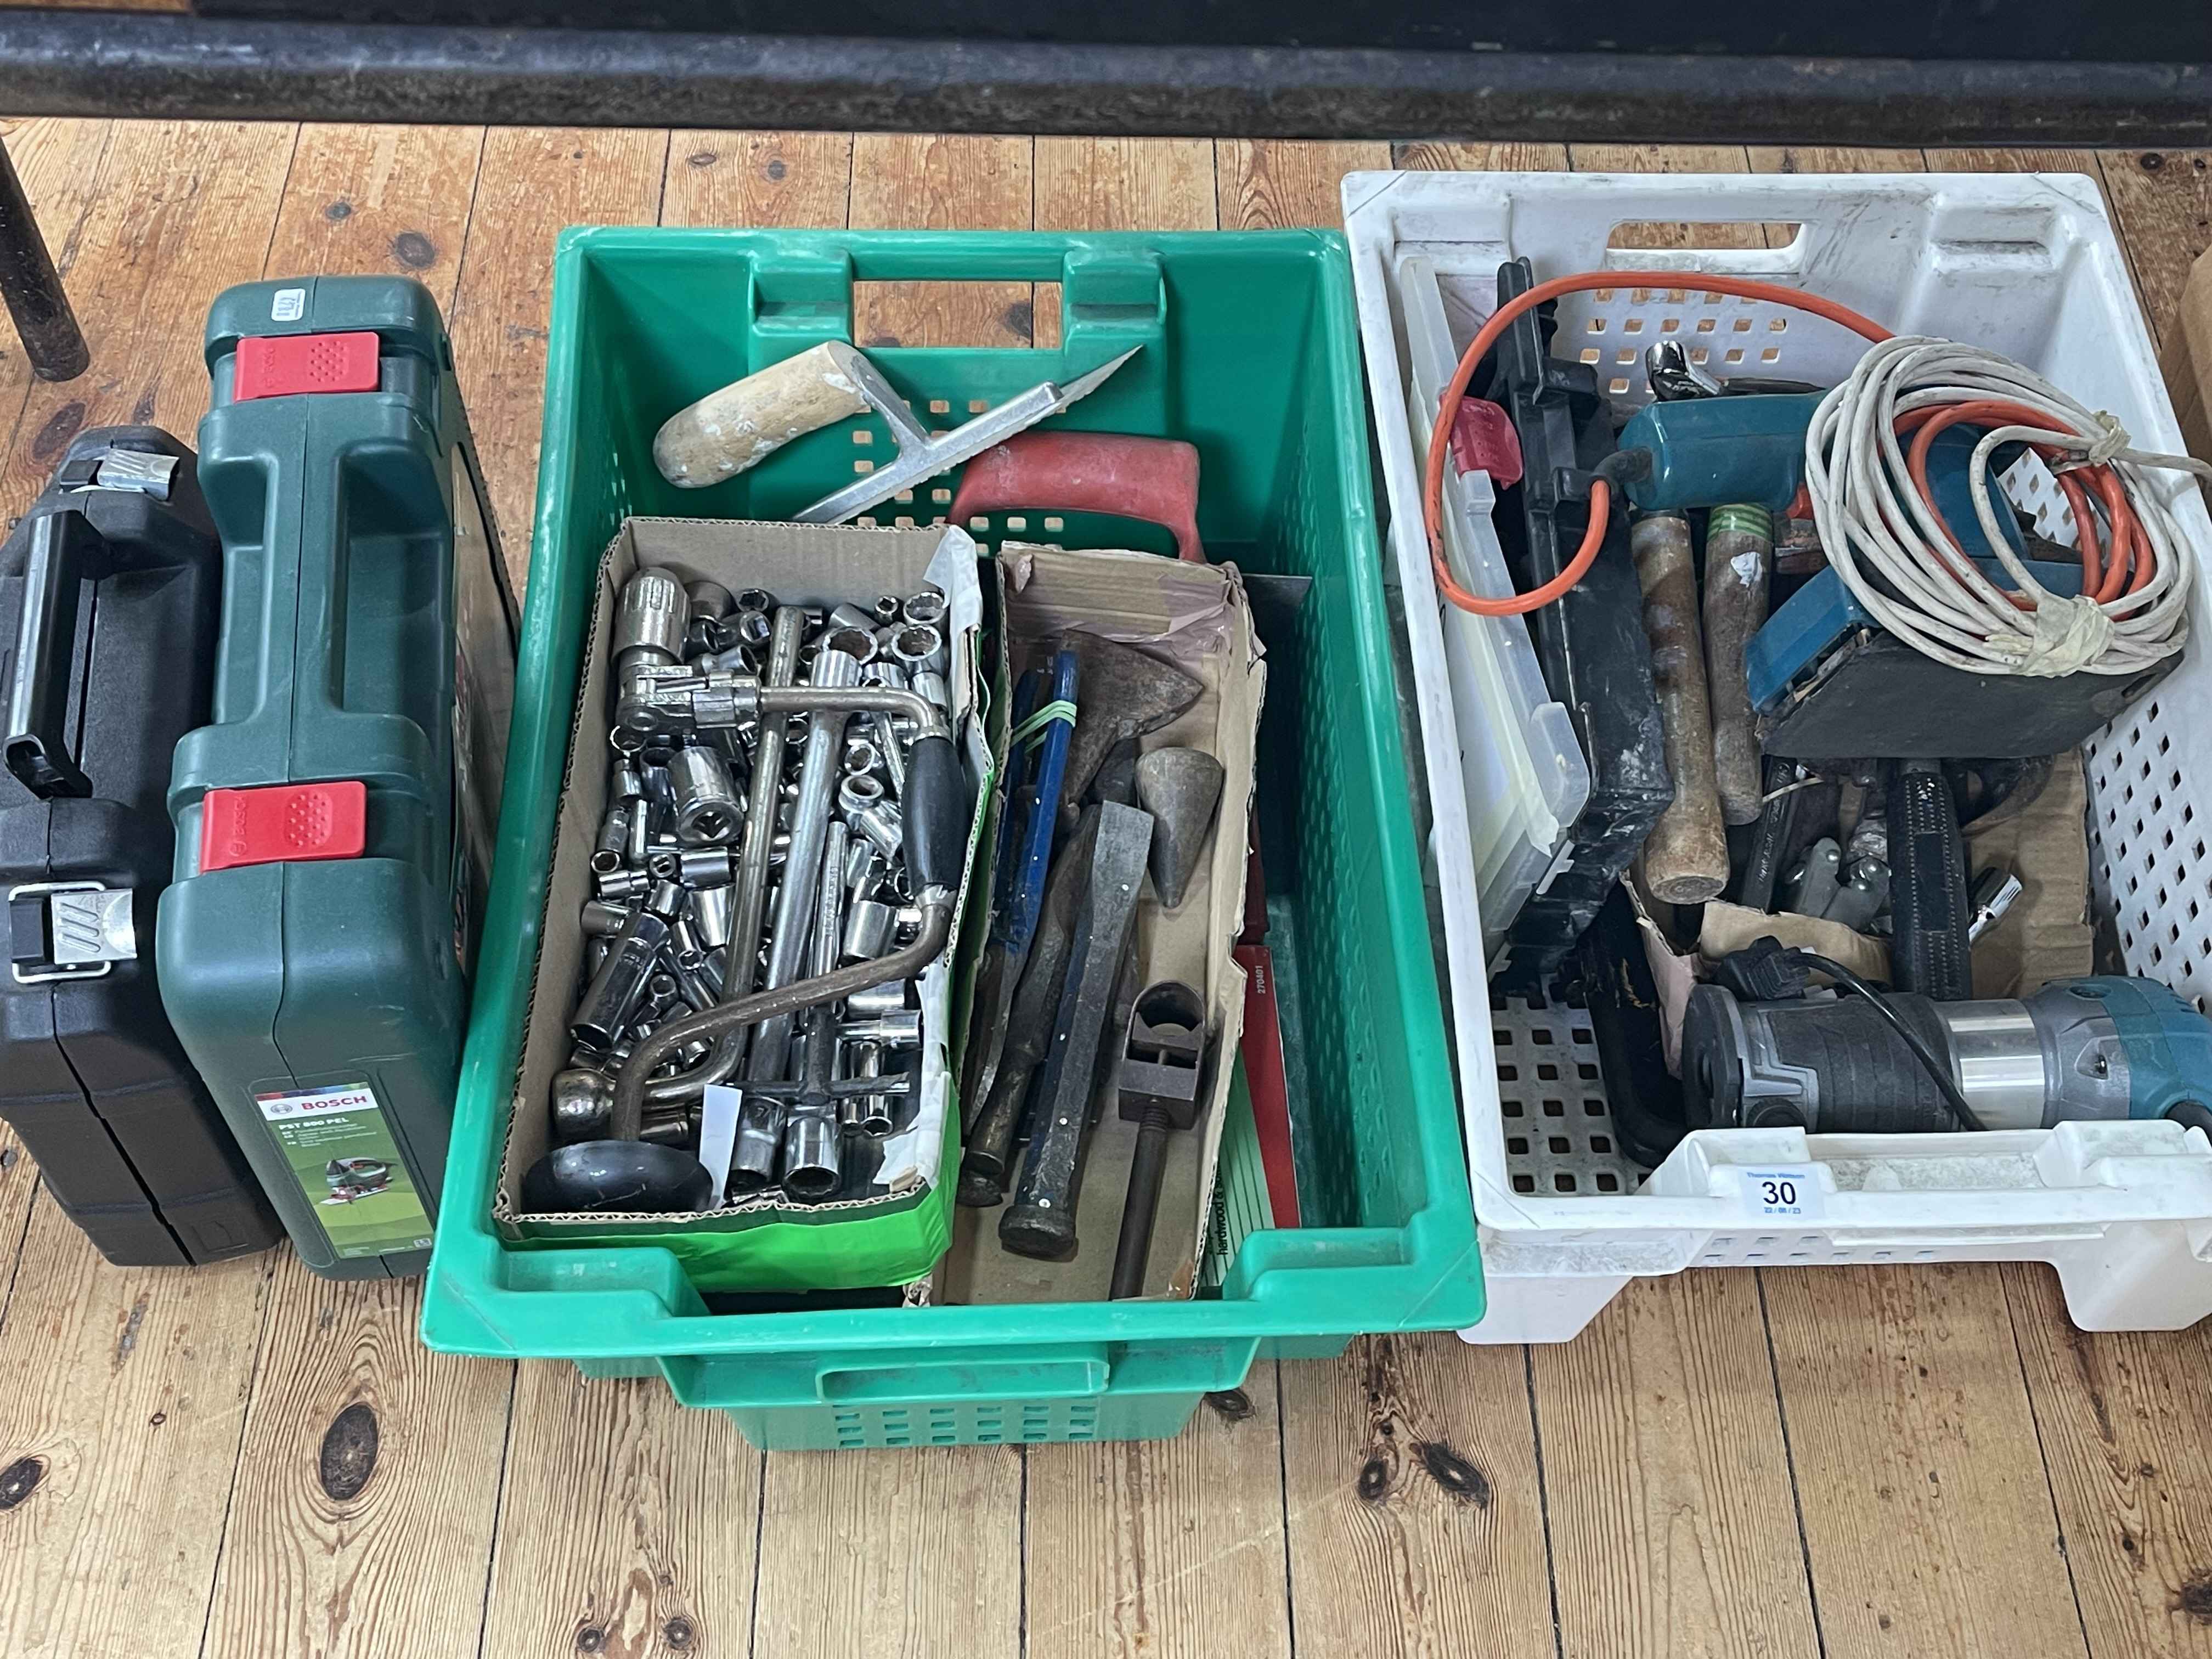 Collection of tools, sockets, sander, Bosch jigsaw, Parkside multi grinder, etc.